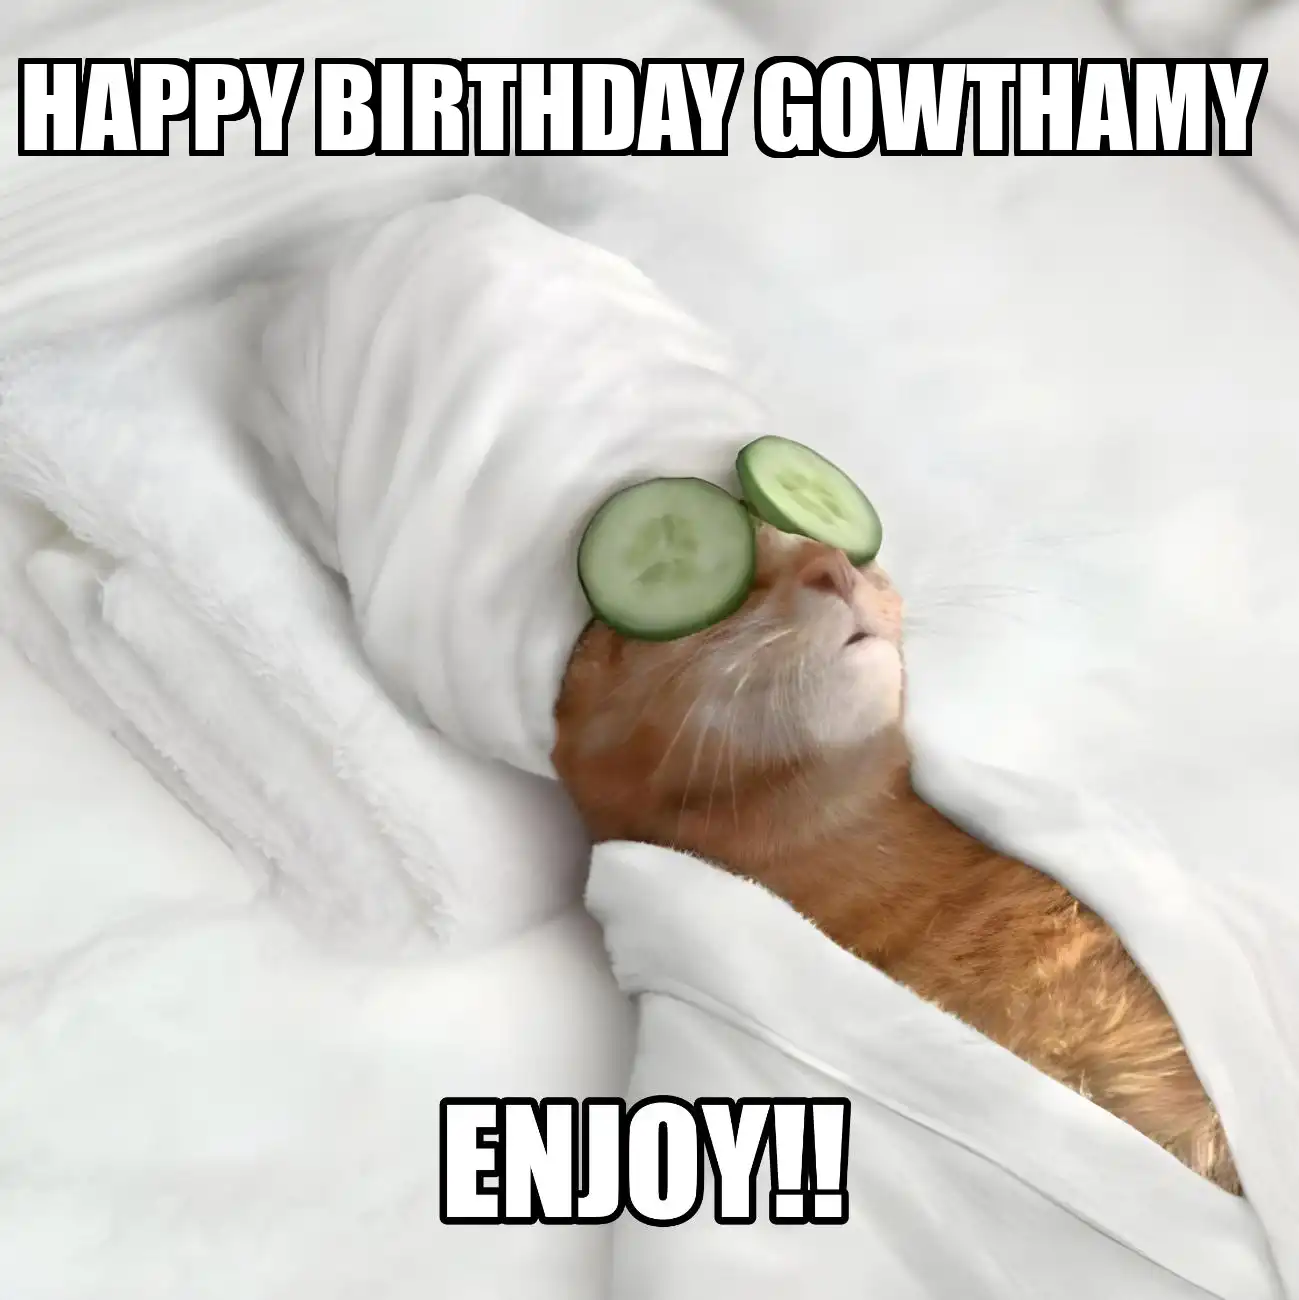 Happy Birthday Gowthamy Enjoy Cat Meme